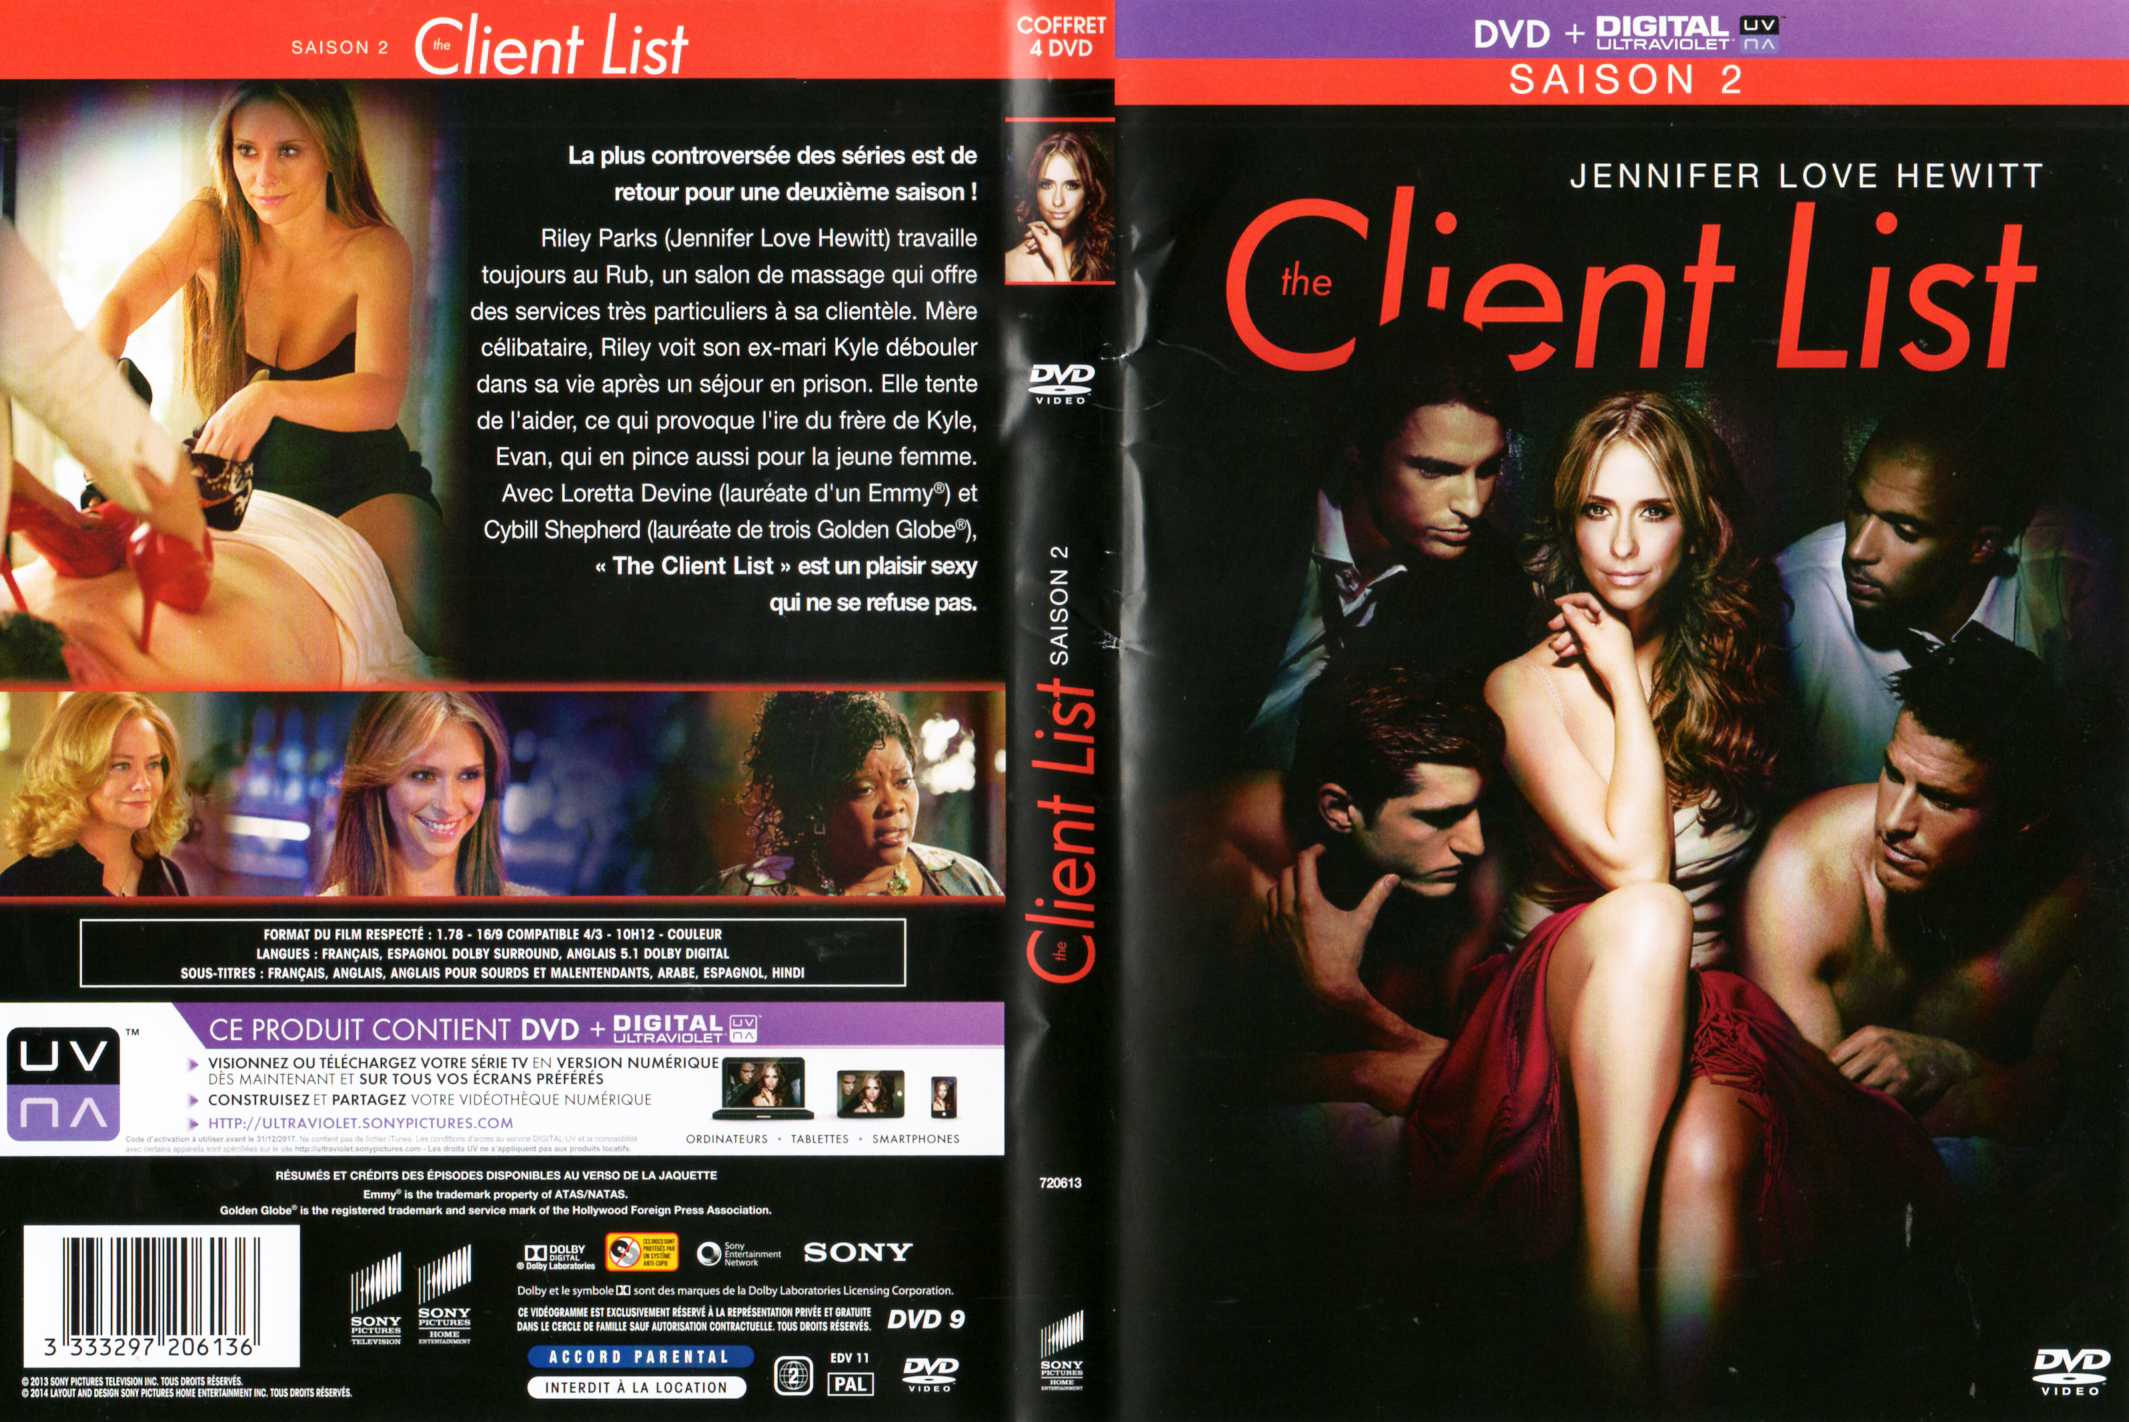 Jaquette DVD The Client List Saison 2